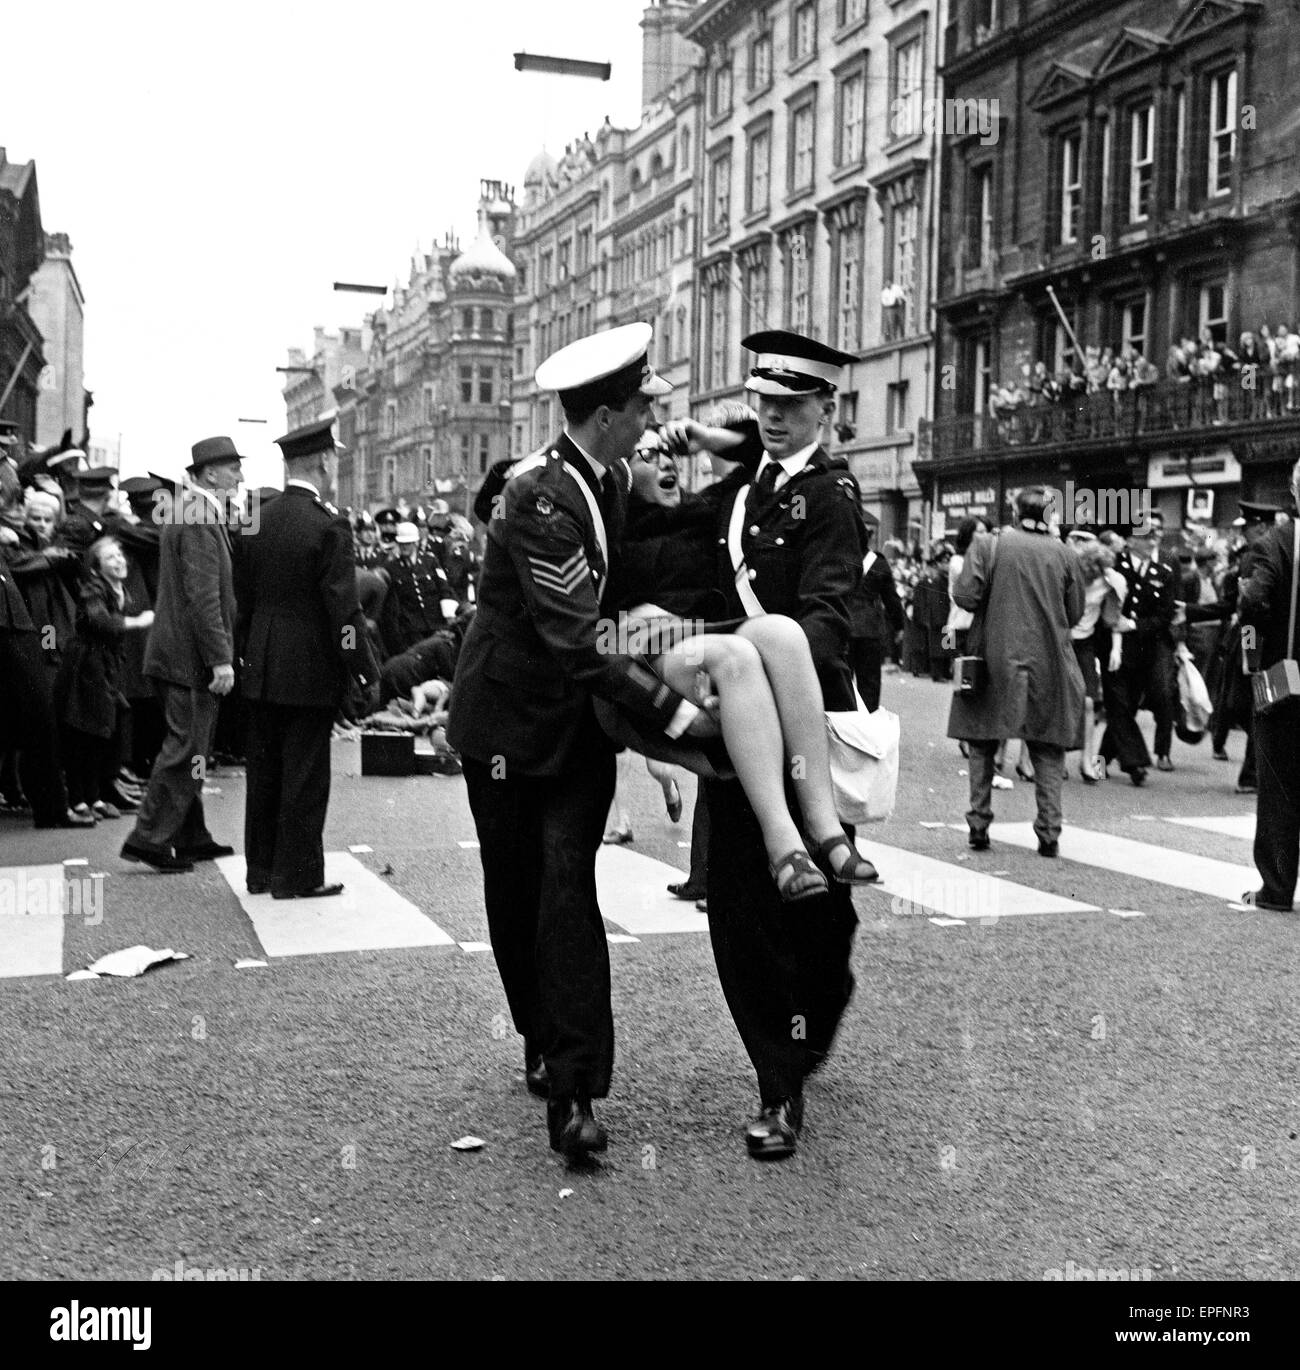 Norte de premier de la película 'The Beatles un duro día de la noche". La policía intenta controlar los ventiladores en las calles de Liverpool, retratada aquí 2 policías, hombres llevan un ventilador lesionado. El 10 de julio de 1964. Foto de stock